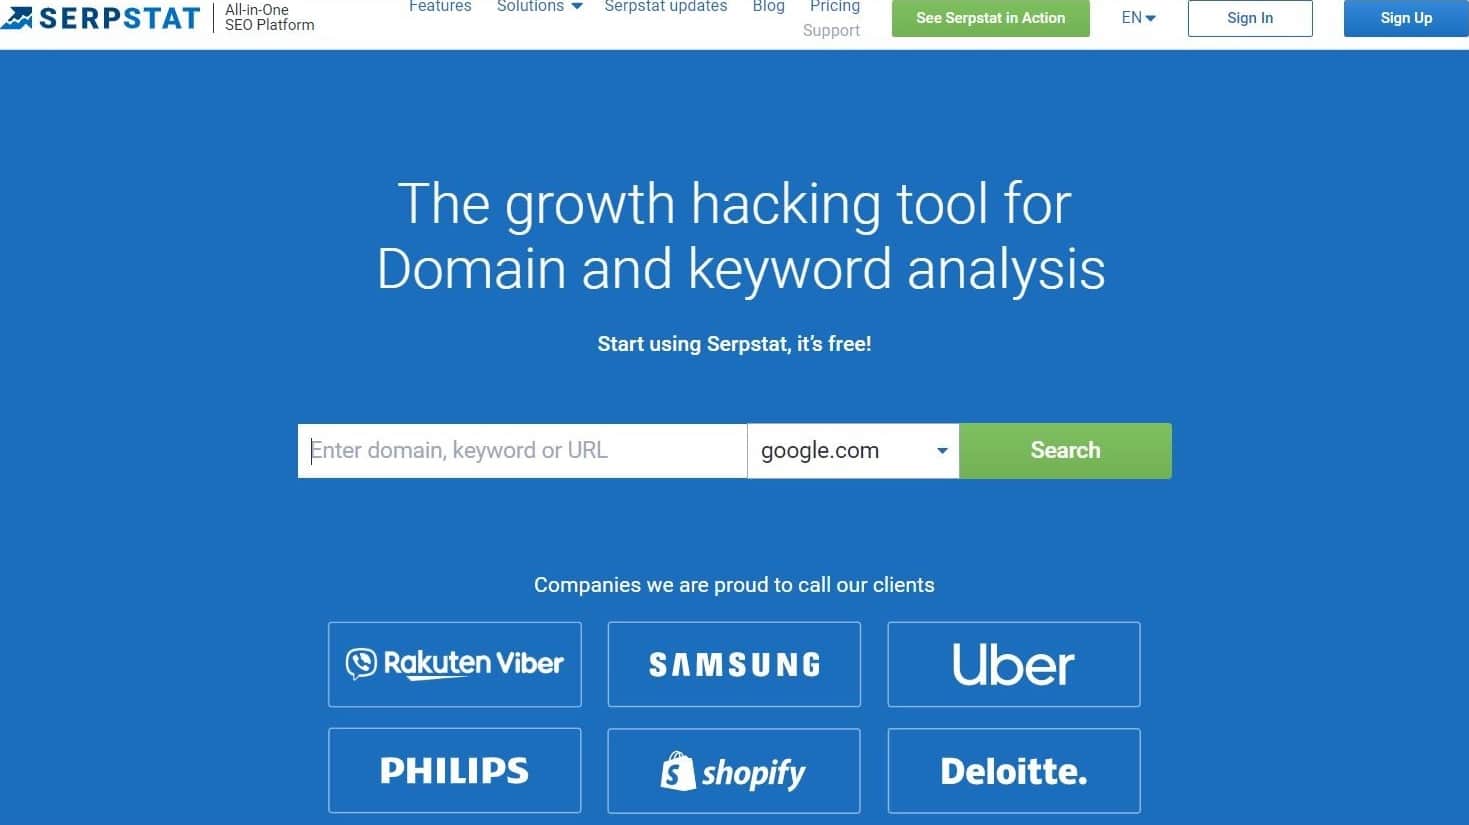 Die Serpstat-Startseite mit einer Suchleiste und dem Slogan "The growth hacking tool for Domain and keyword analysis".